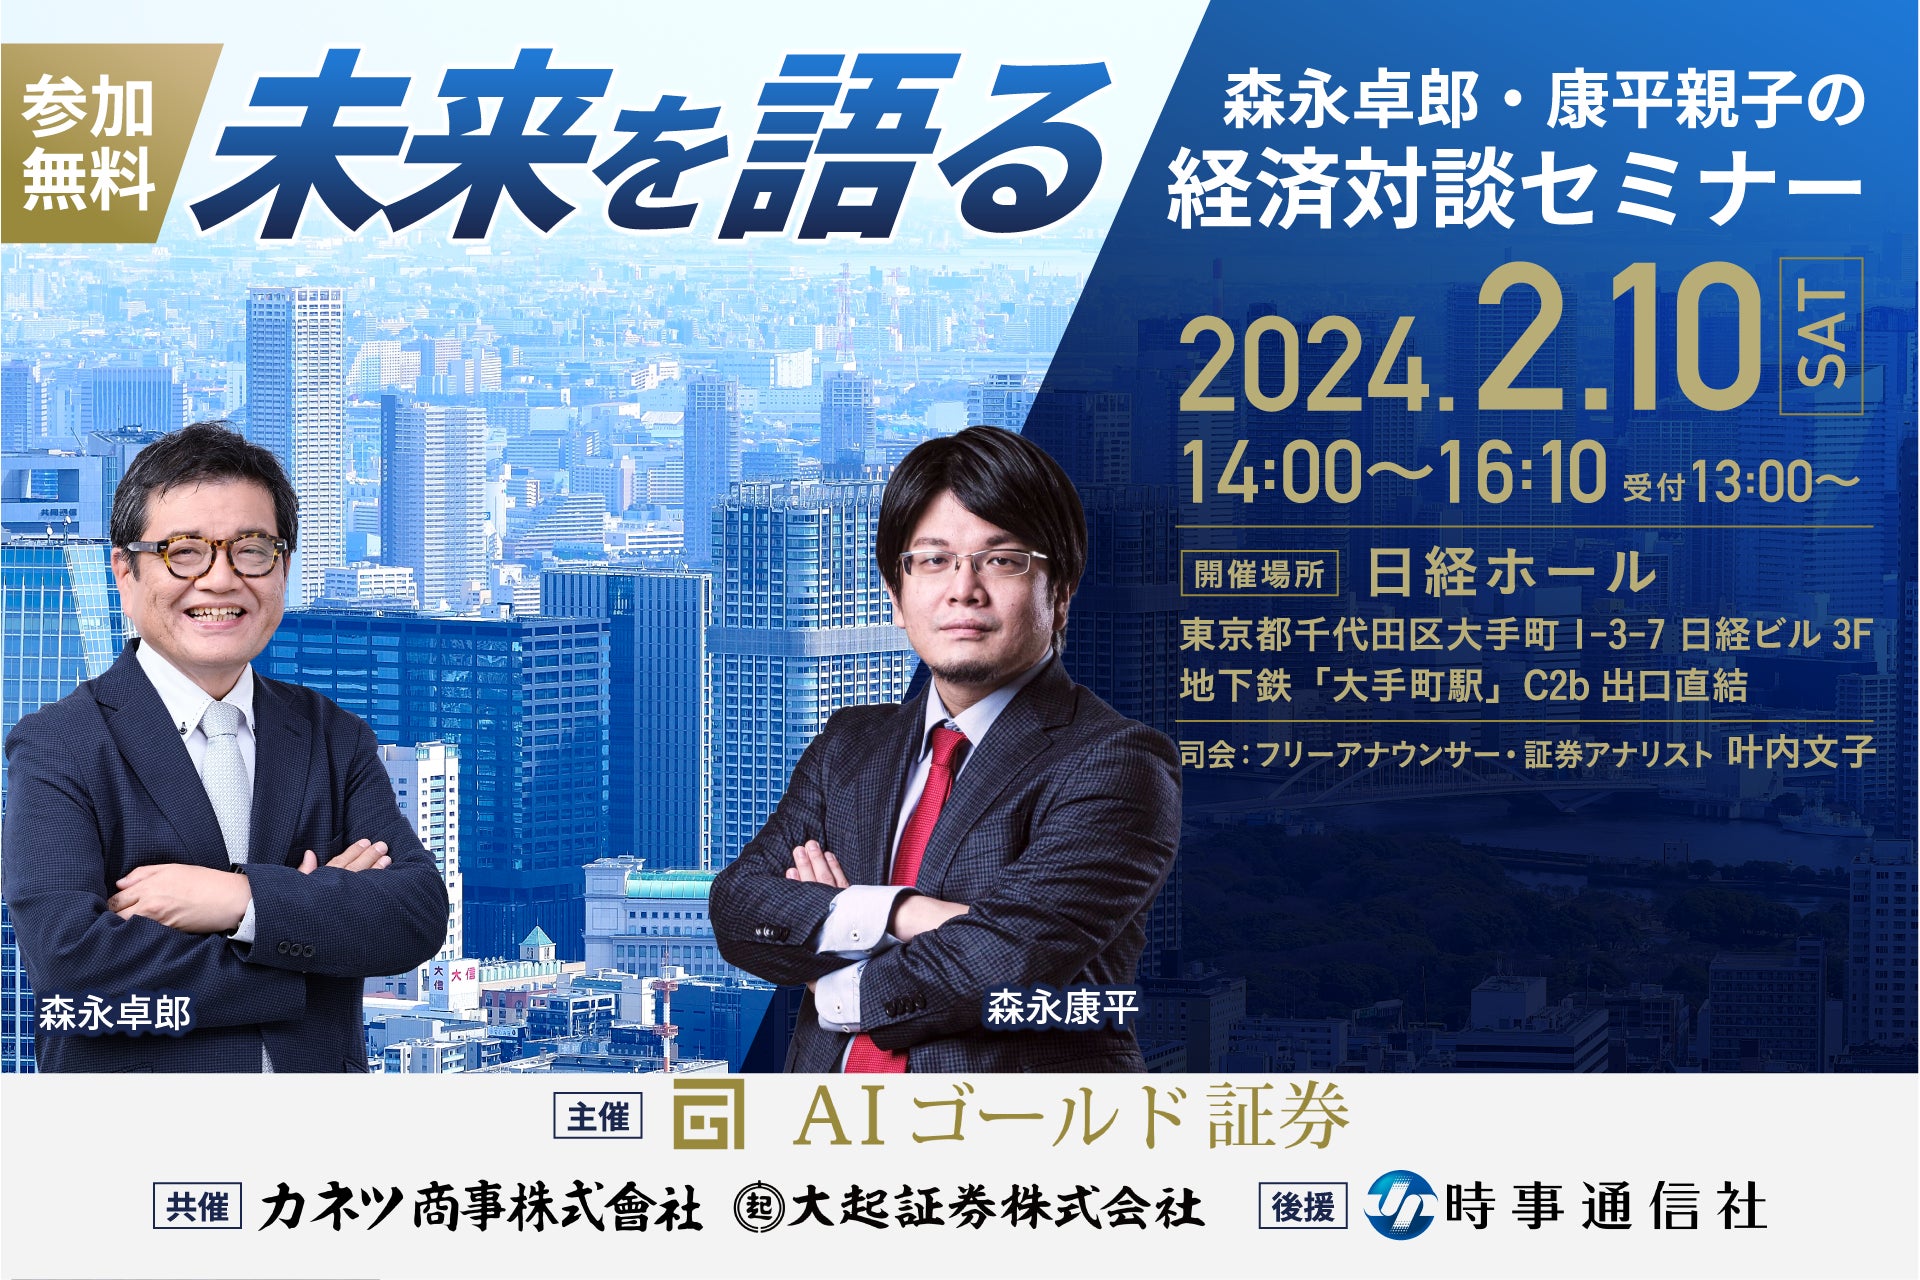 森永卓郎・康平親子の経済対談セミナーを開催! FX初心者も必見。